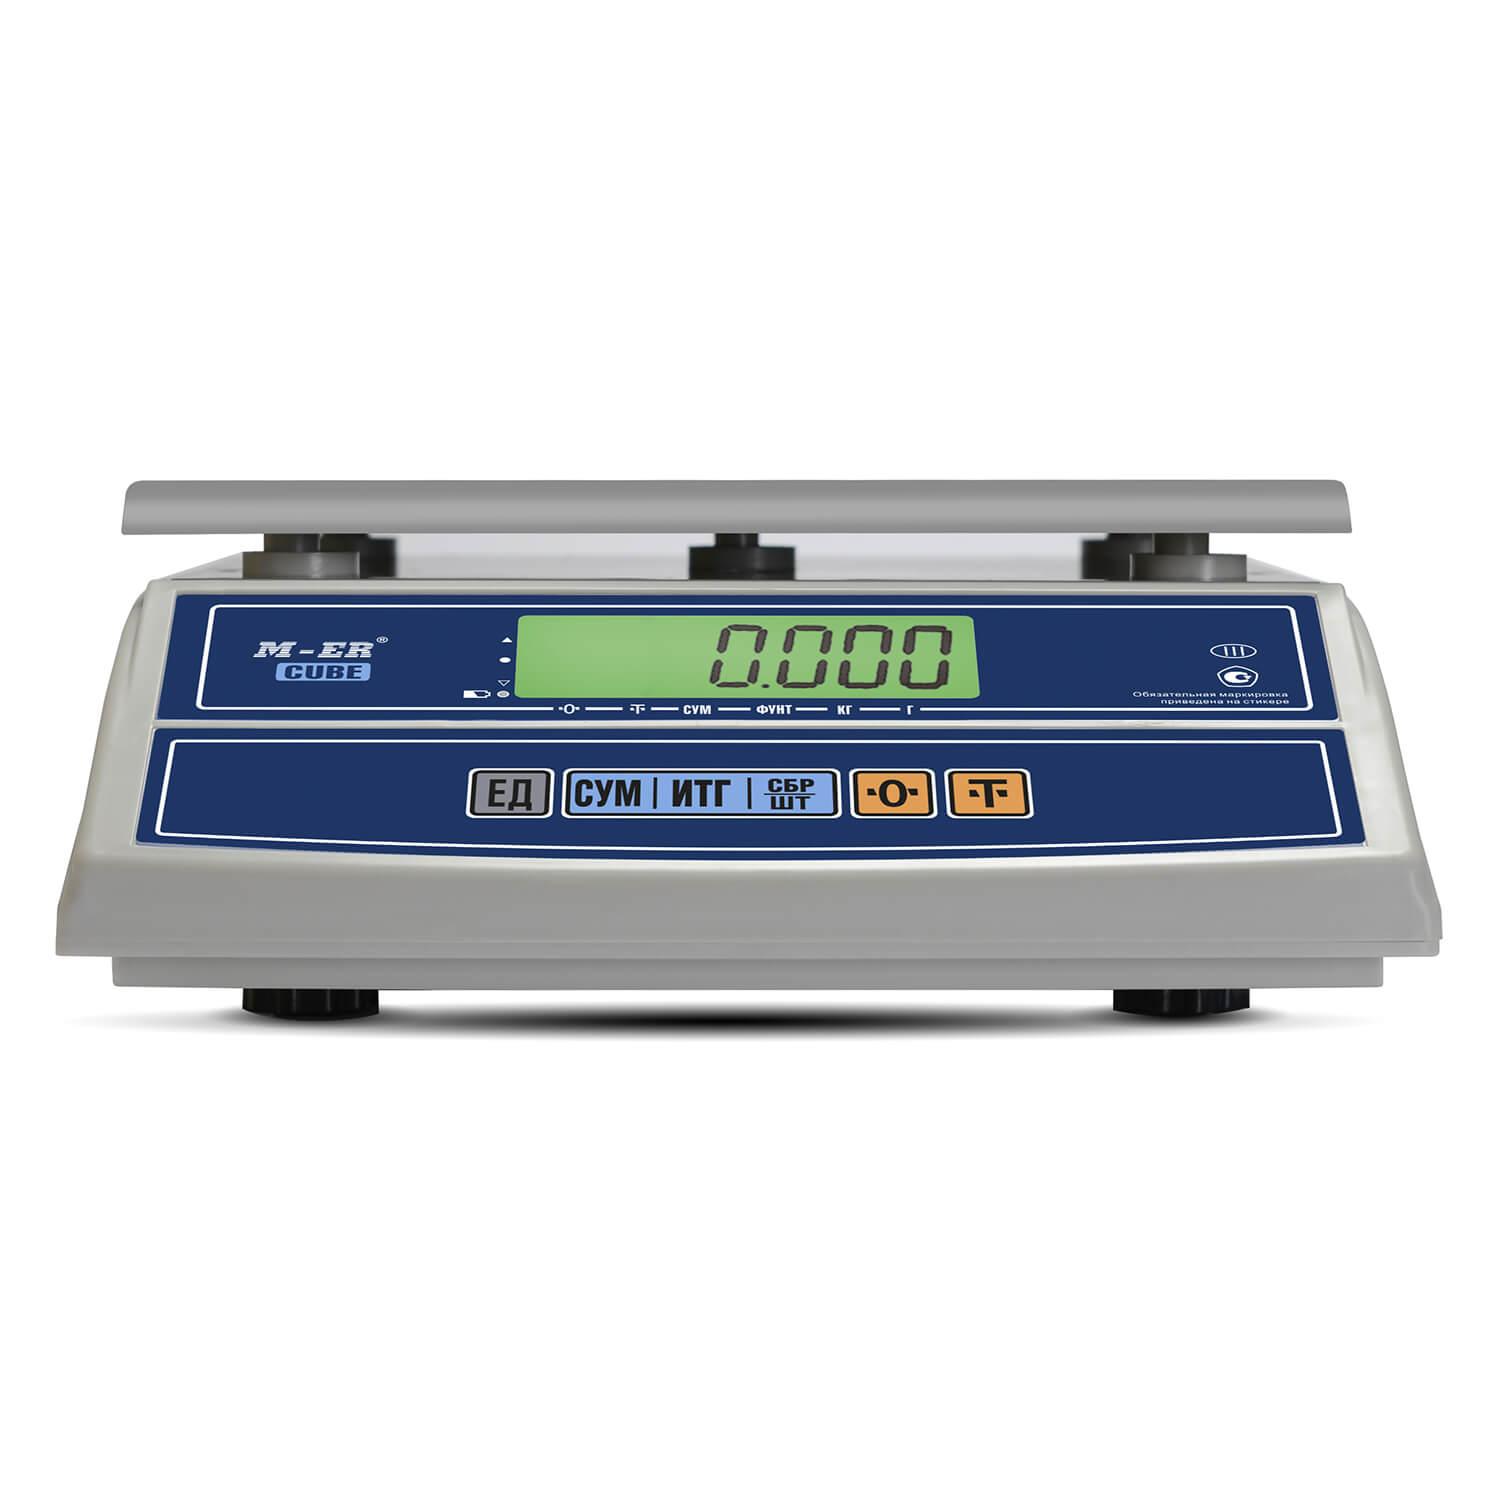 Фасовочные настольные весы M-ER 326 AF-6.1 "Cube" LCD USB (3153)